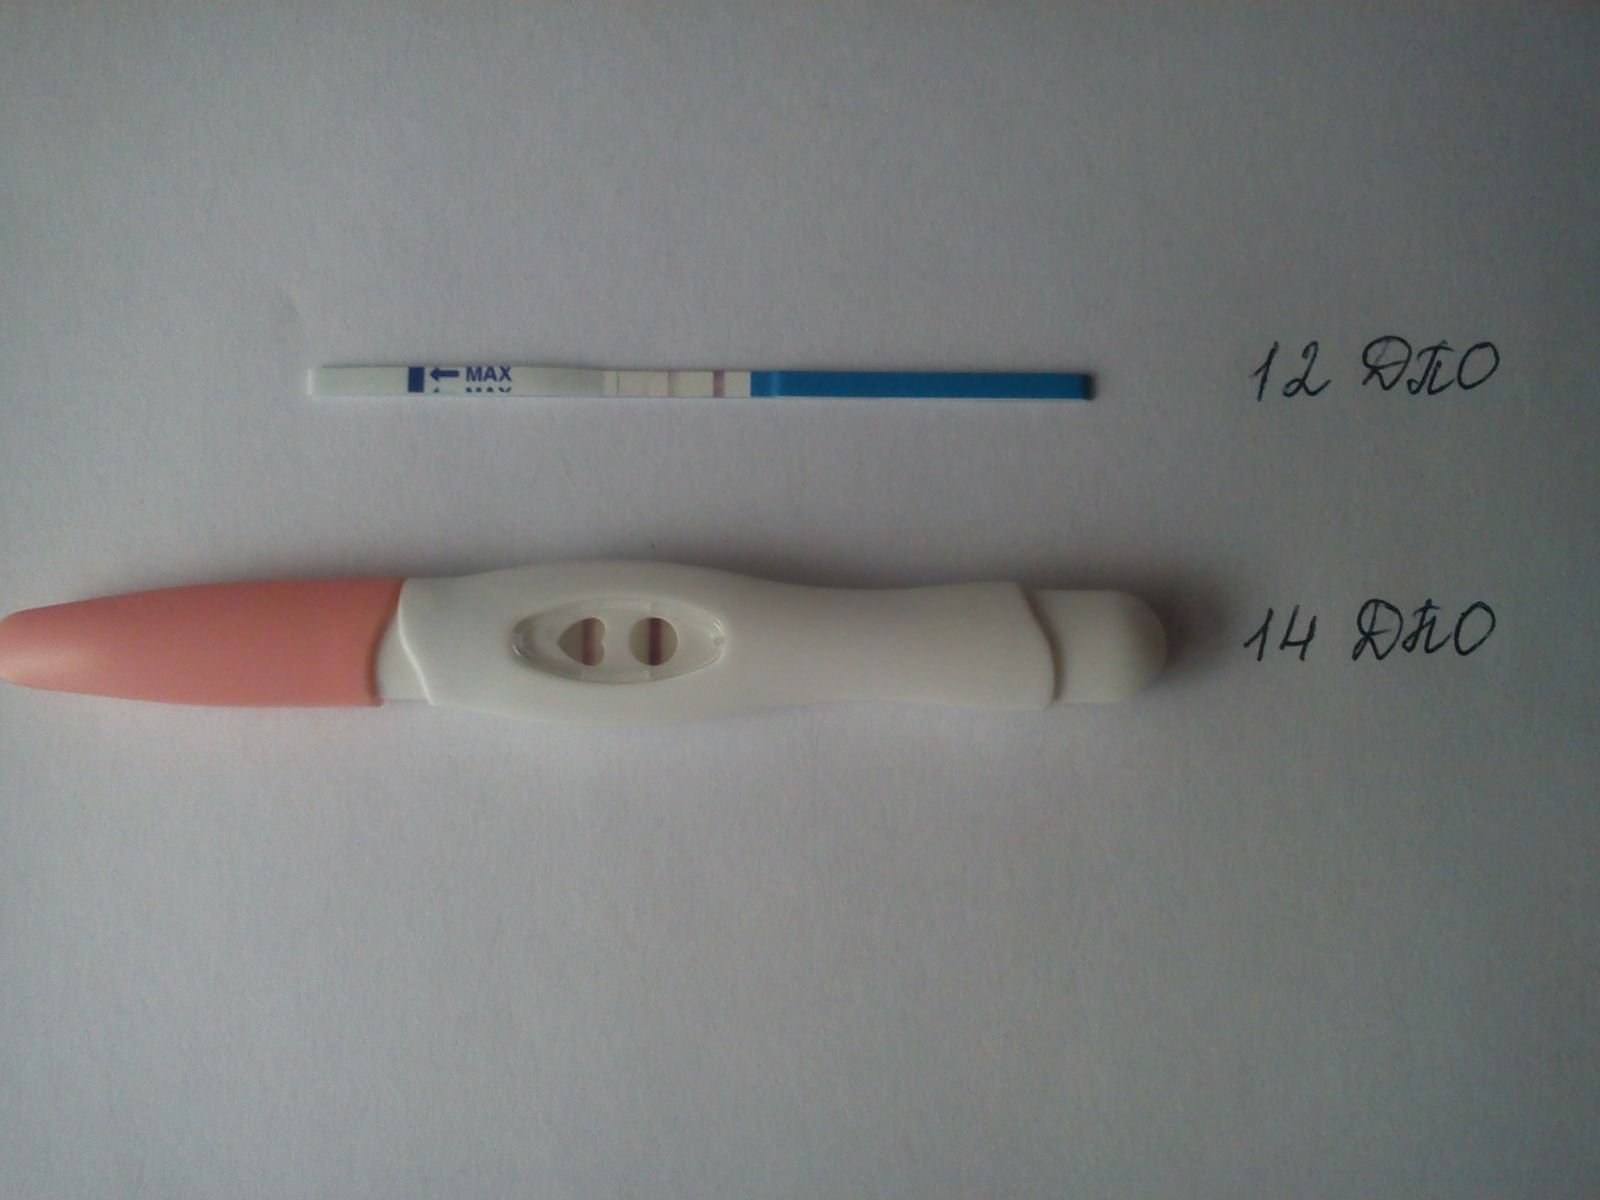 Мои беременные тестики